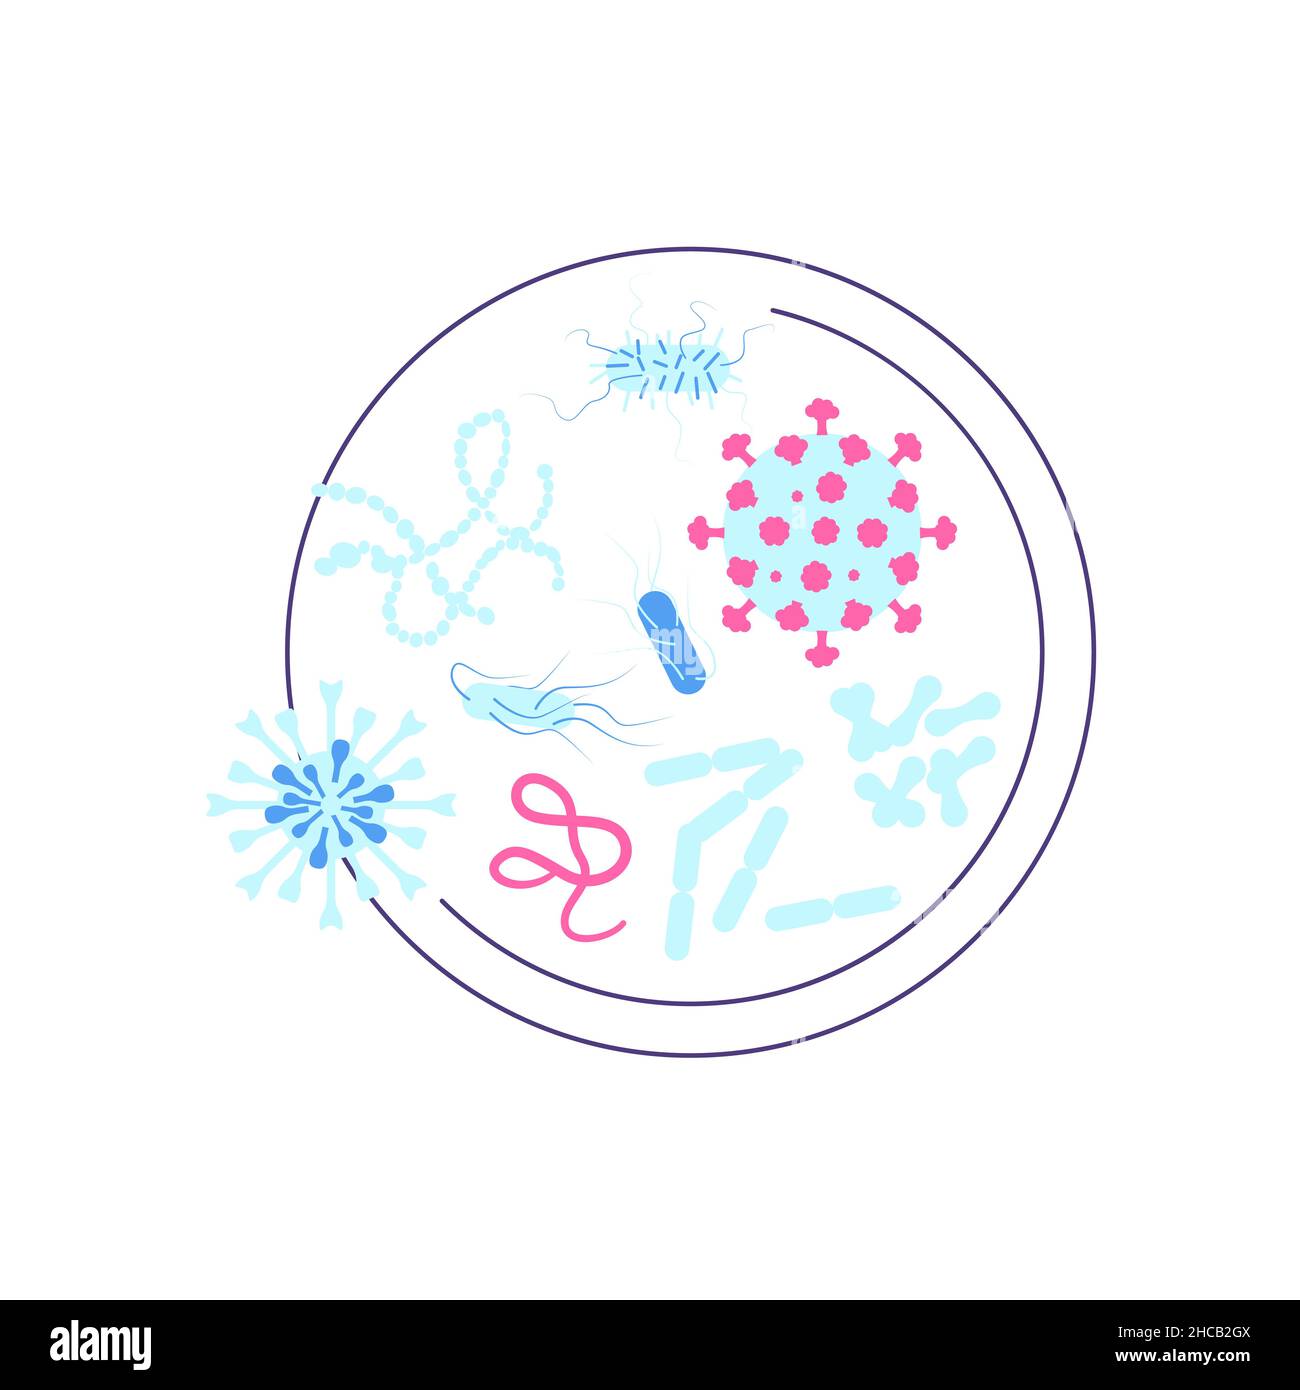 Capsula di Petri con vari batteri e virus. Scienza, chimica ed esplorazione simbolo. Illustrazione del vettore Flat Art Illustrazione Vettoriale